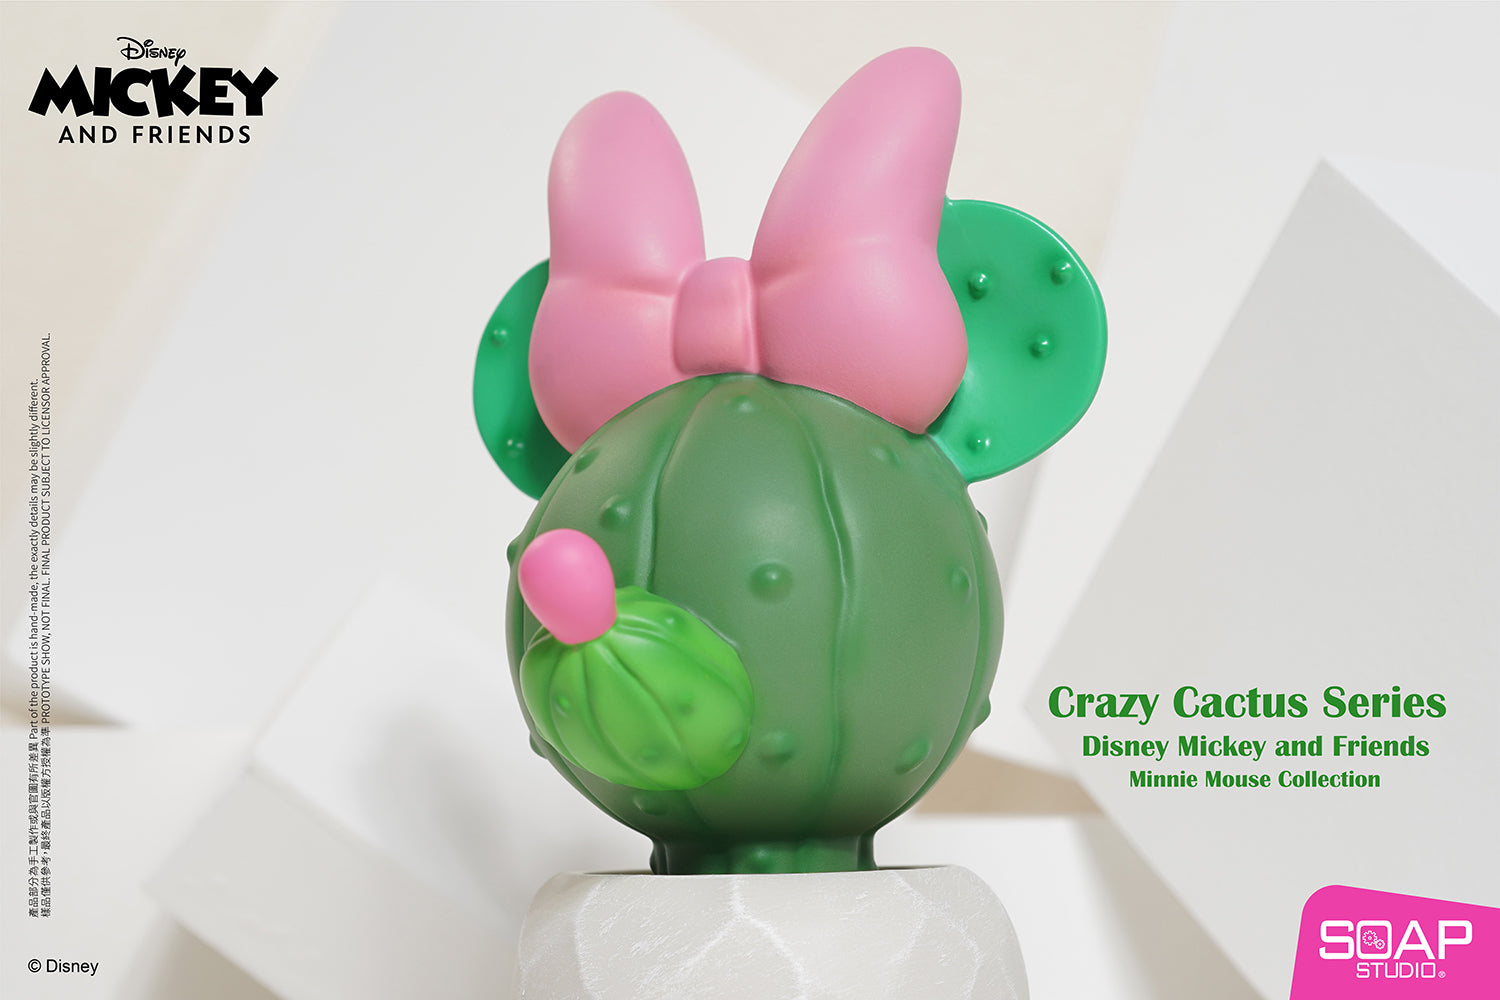 Soap Studio DY059 Disney Minnie Mouse Crazy Cactus Figure